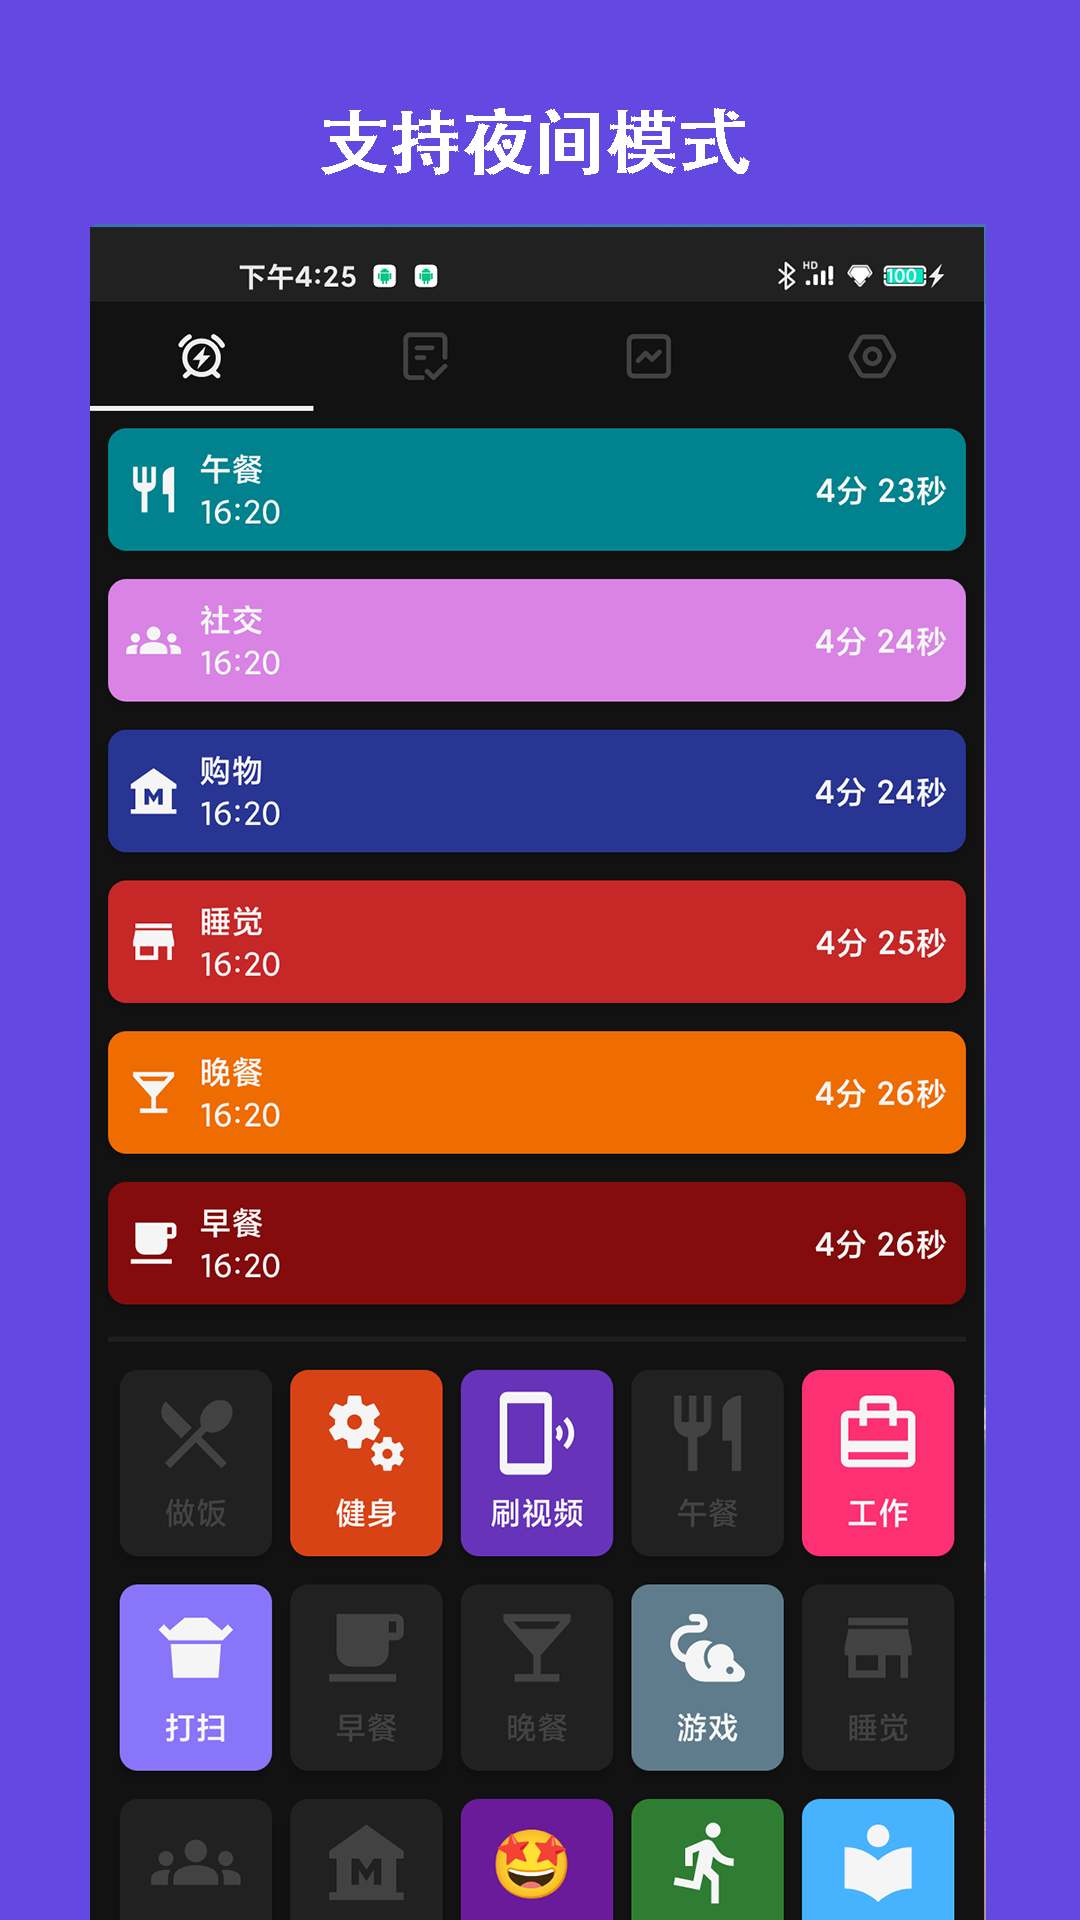 爱时间规划局app 1.15